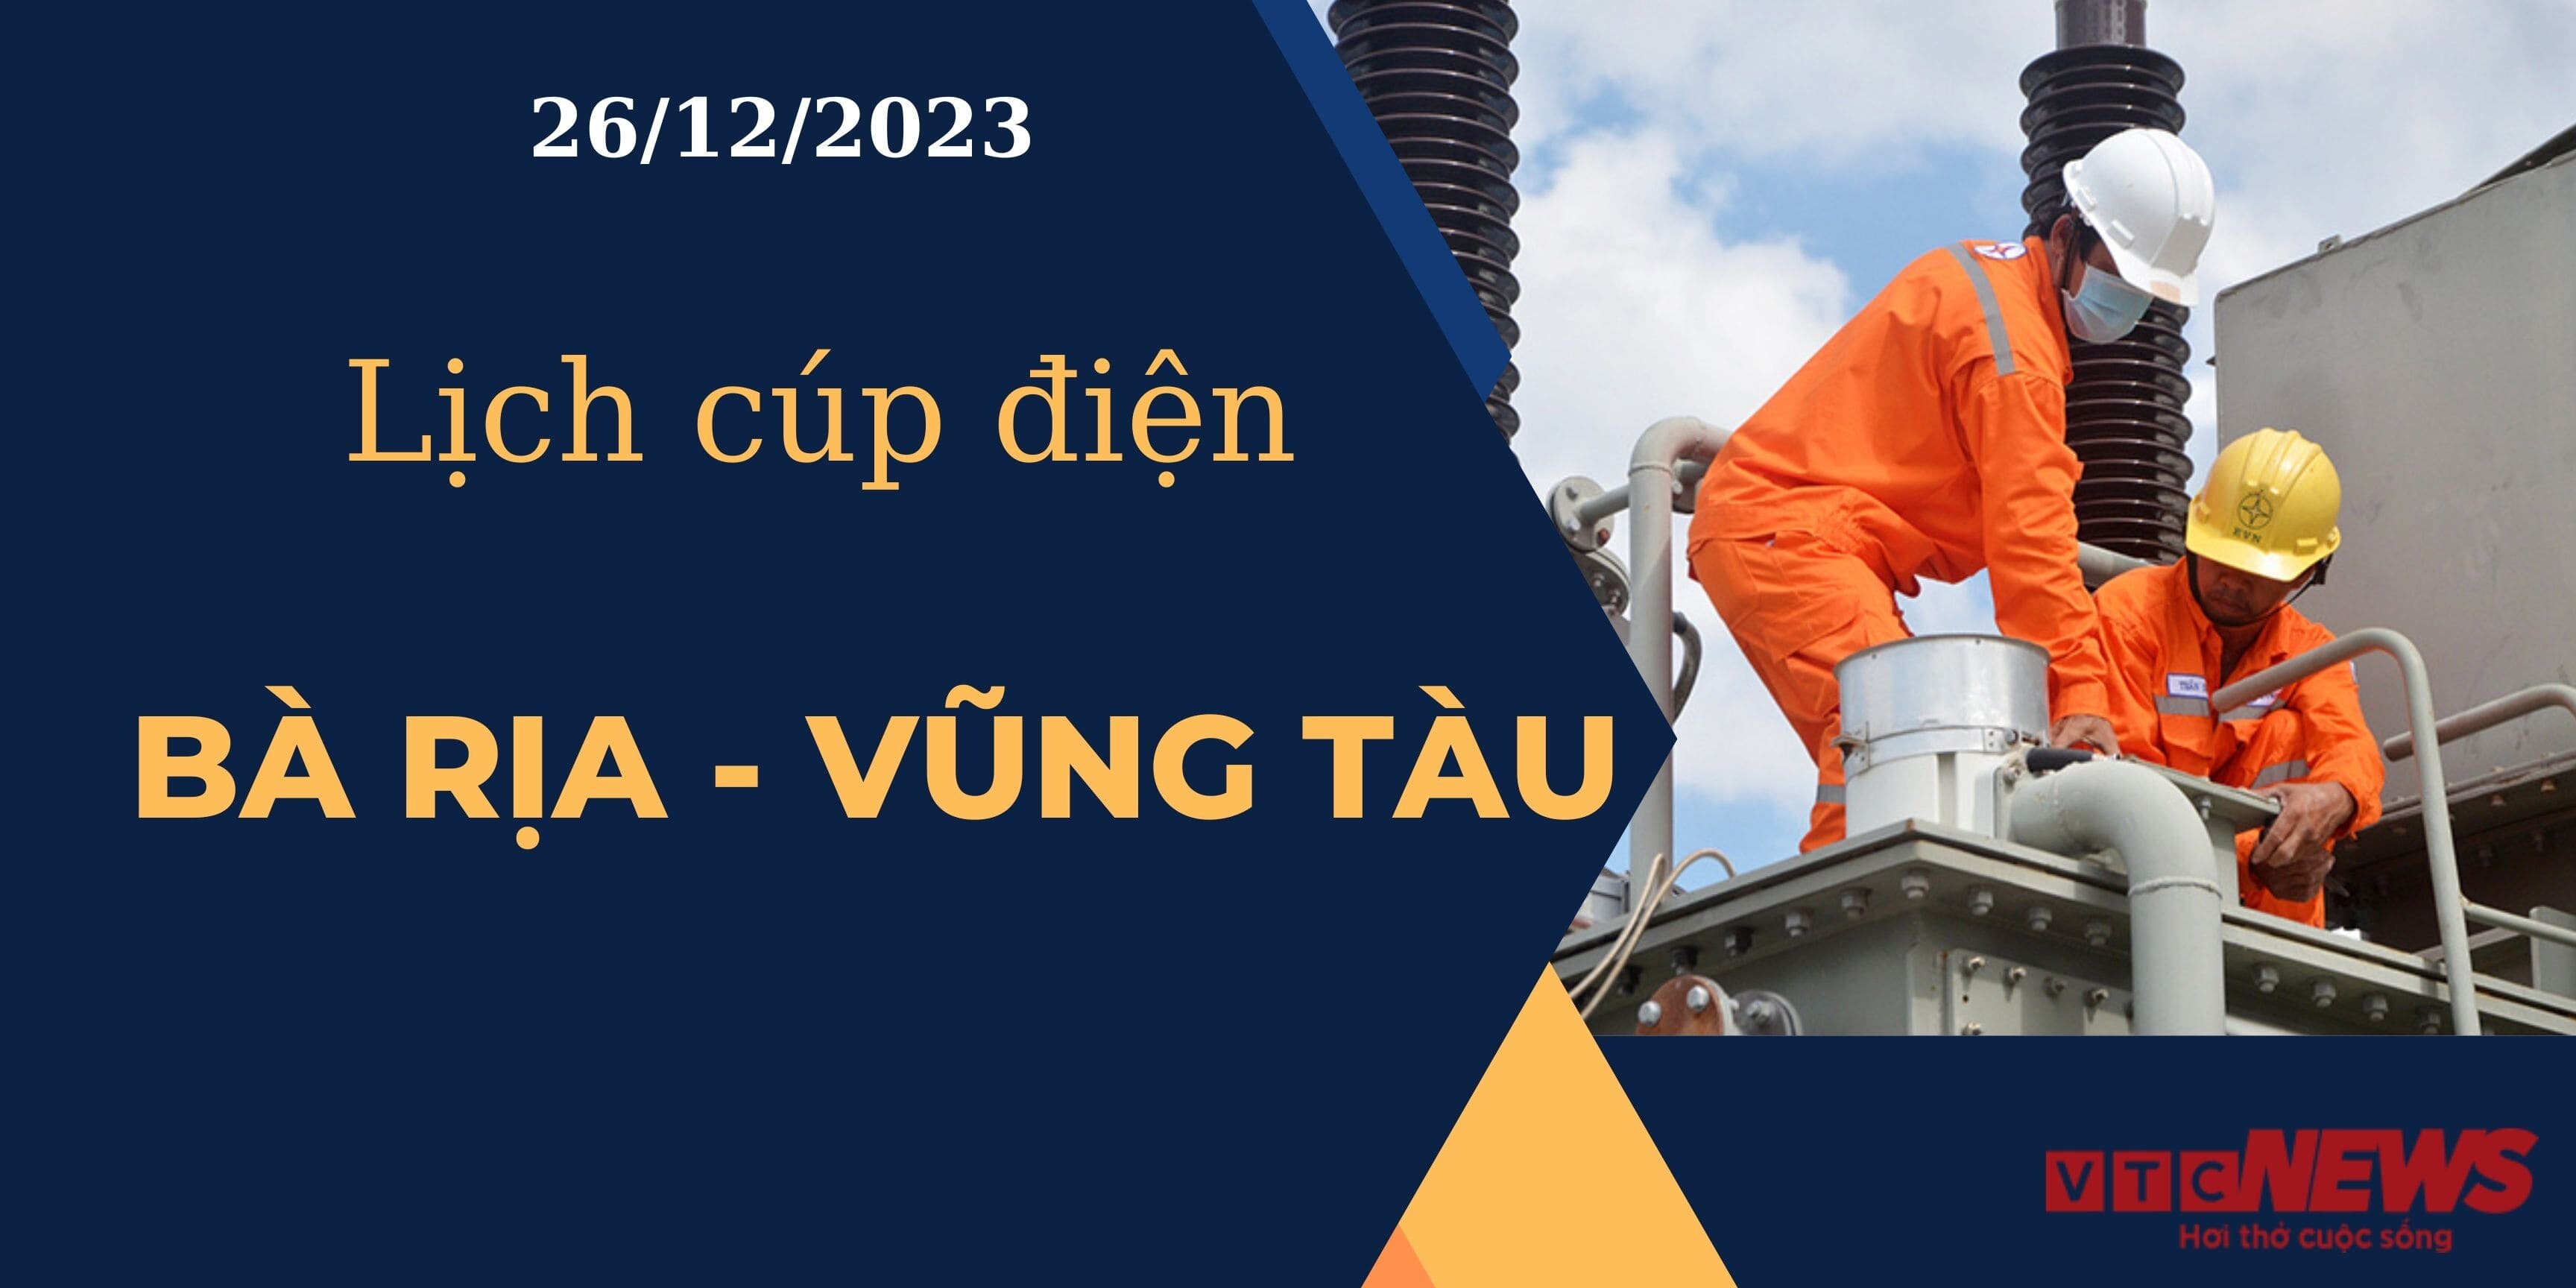 Lịch cúp điện hôm nay tại Bà Rịa - Vũng Tàu ngày 26/12/2023